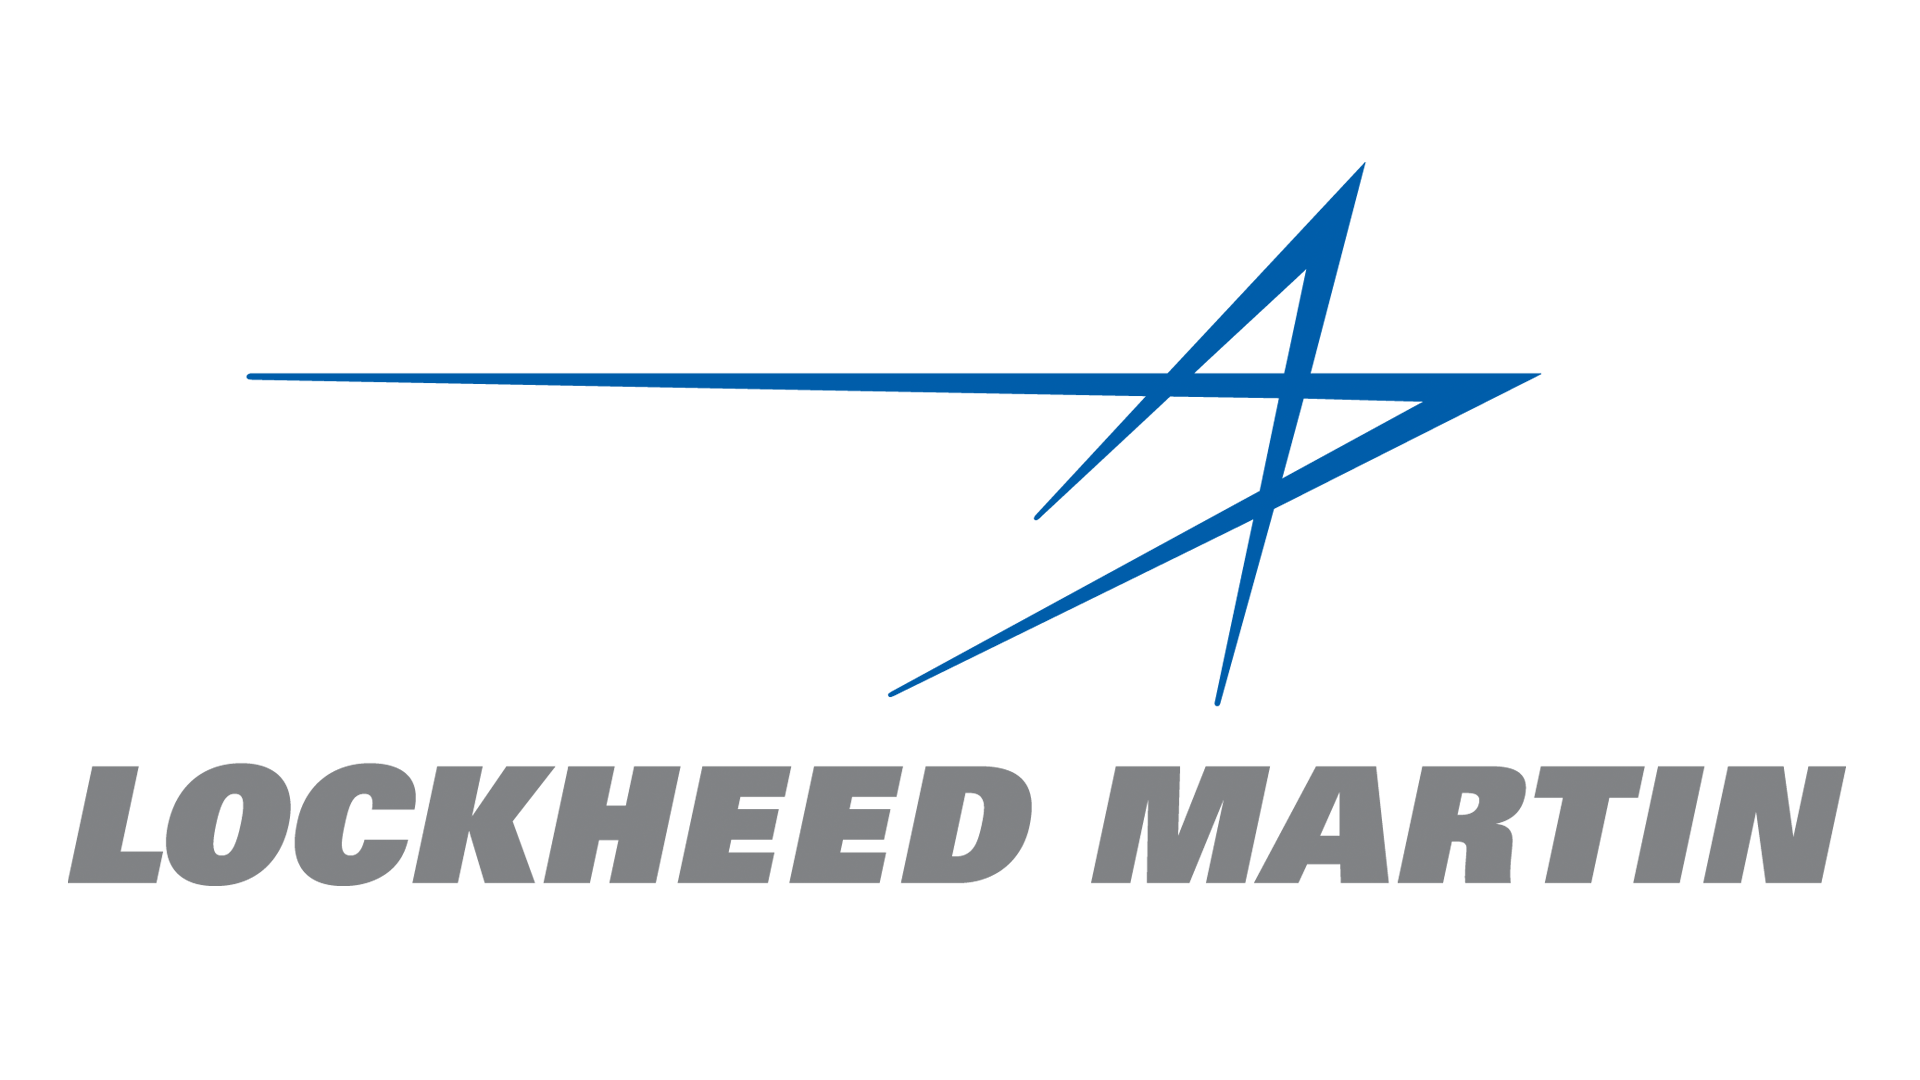 Lockheed Aircraft Logo - Lockheed Martin: Are You Worth It? Martin NYSE:LMT